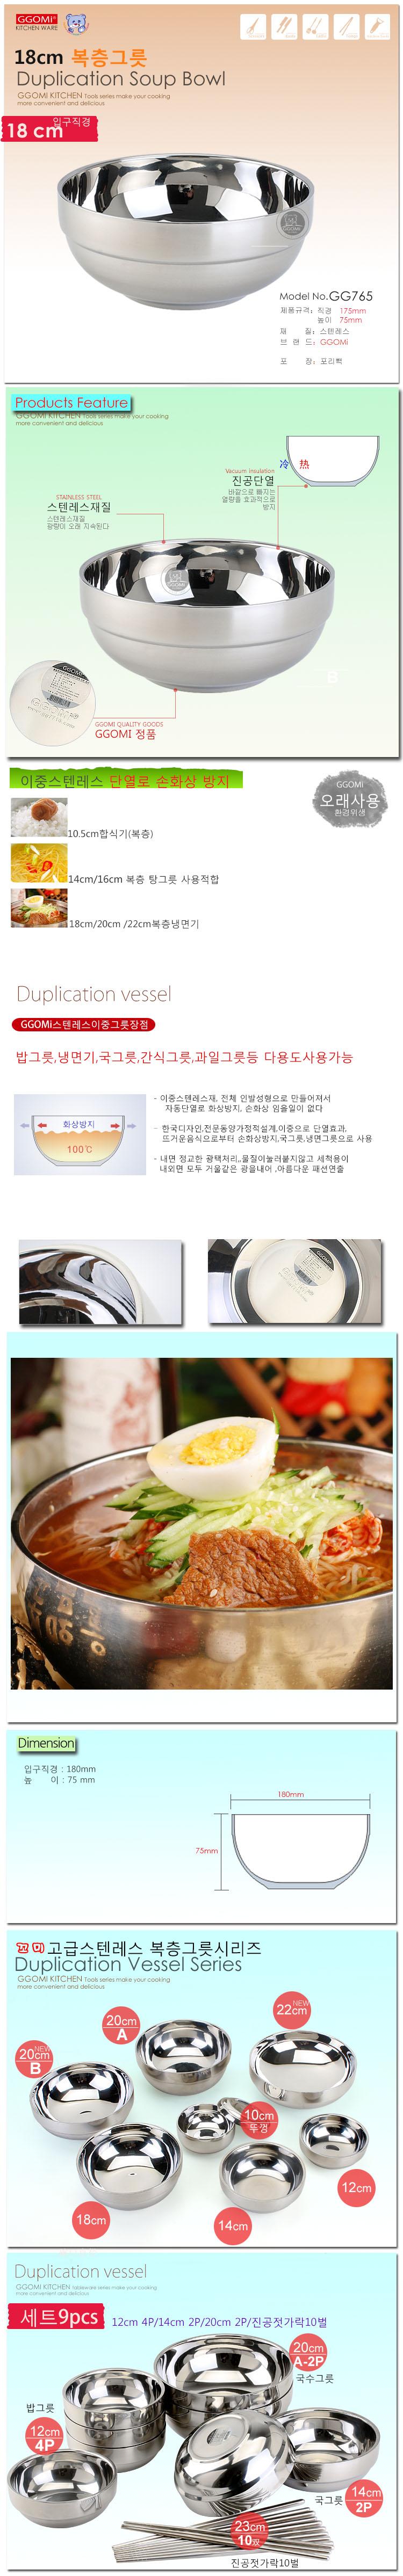 GG765 duplication soup bowl_info korean.jpg